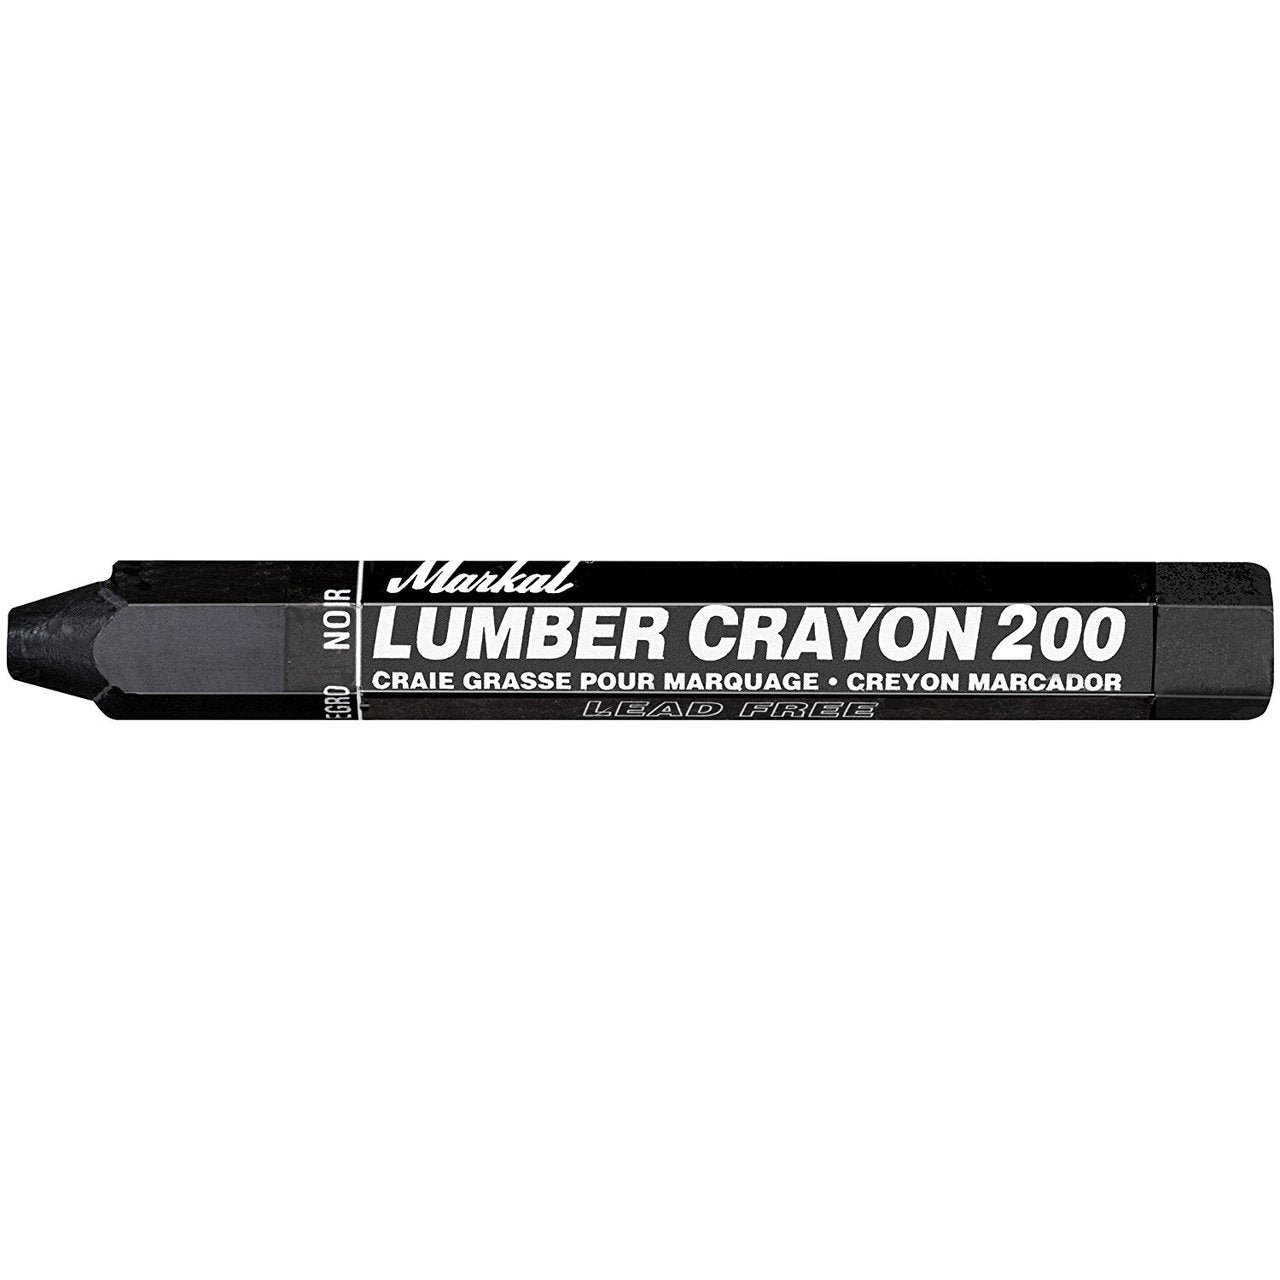 Markal Timberstik All Purpose Lumber Crayons